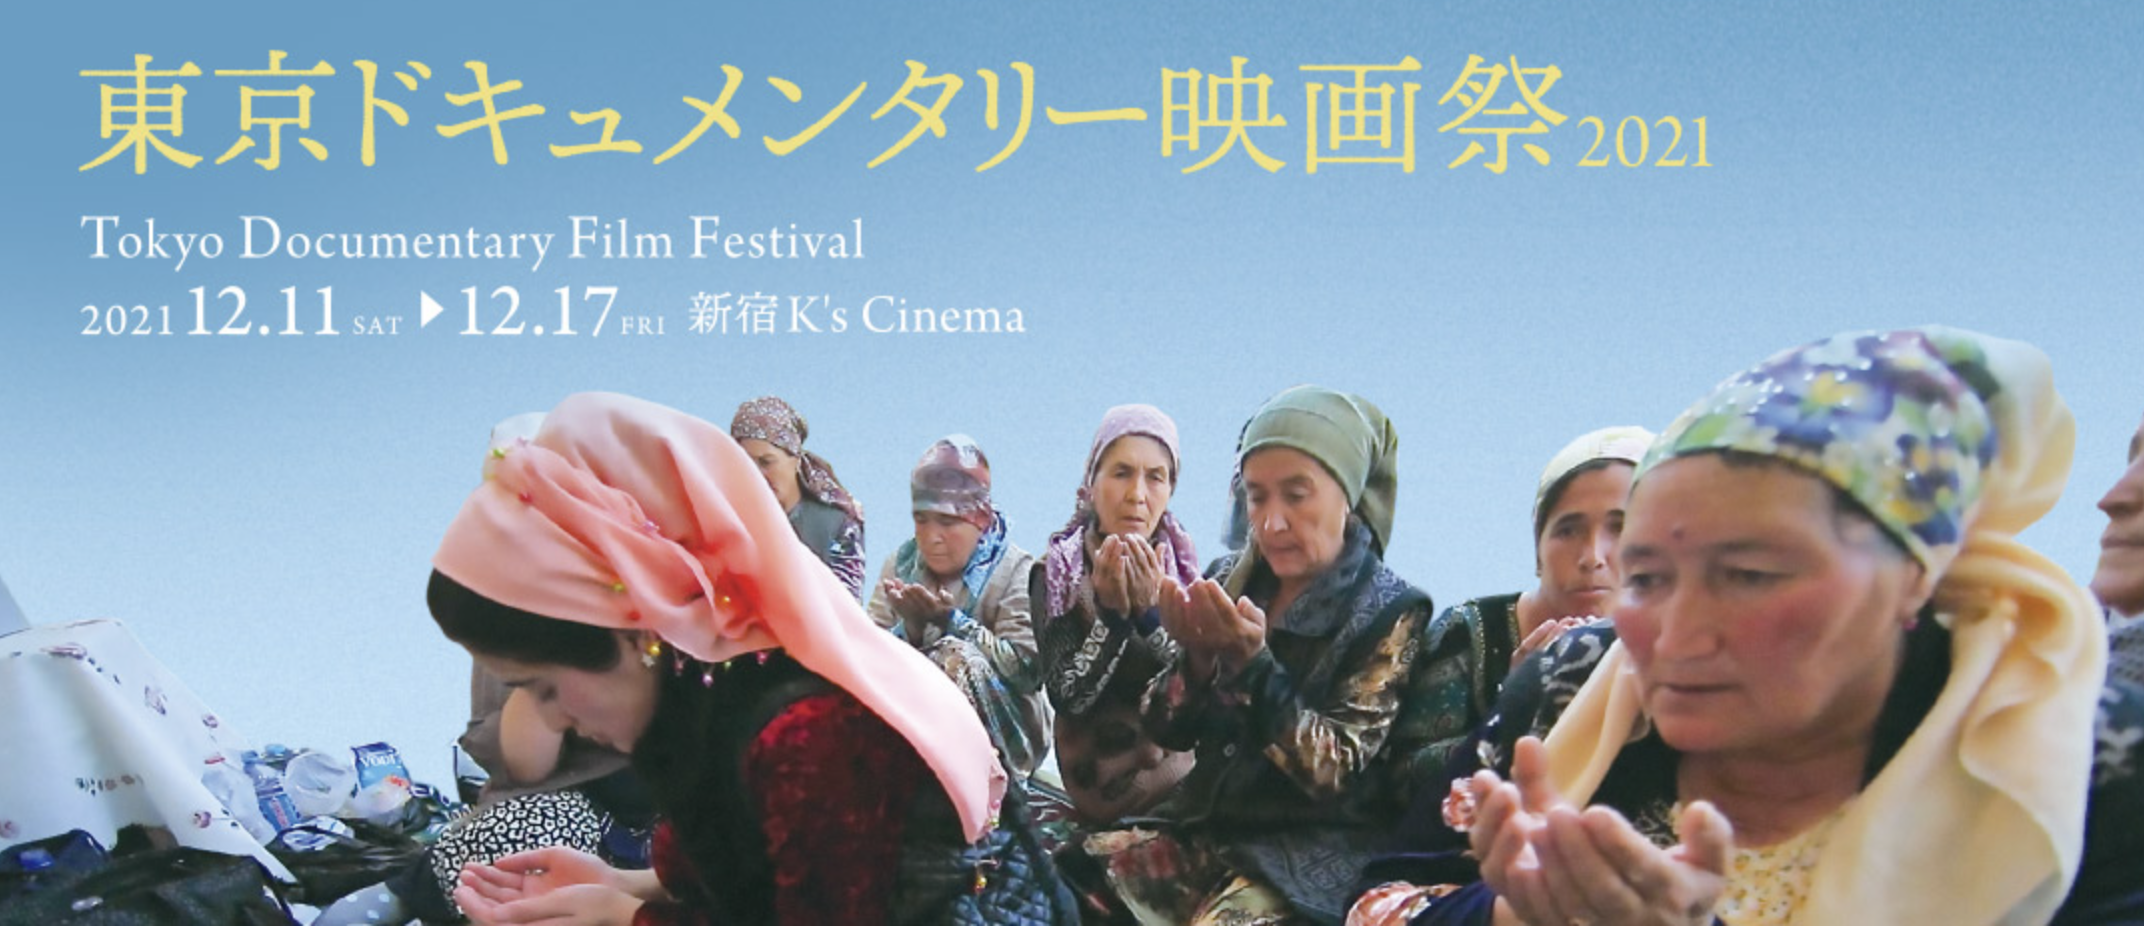 藤川史人さん　2021年度「日本文化藝術奨学生」に決定、「東京ドキュメンタリー映画祭2021」に選出